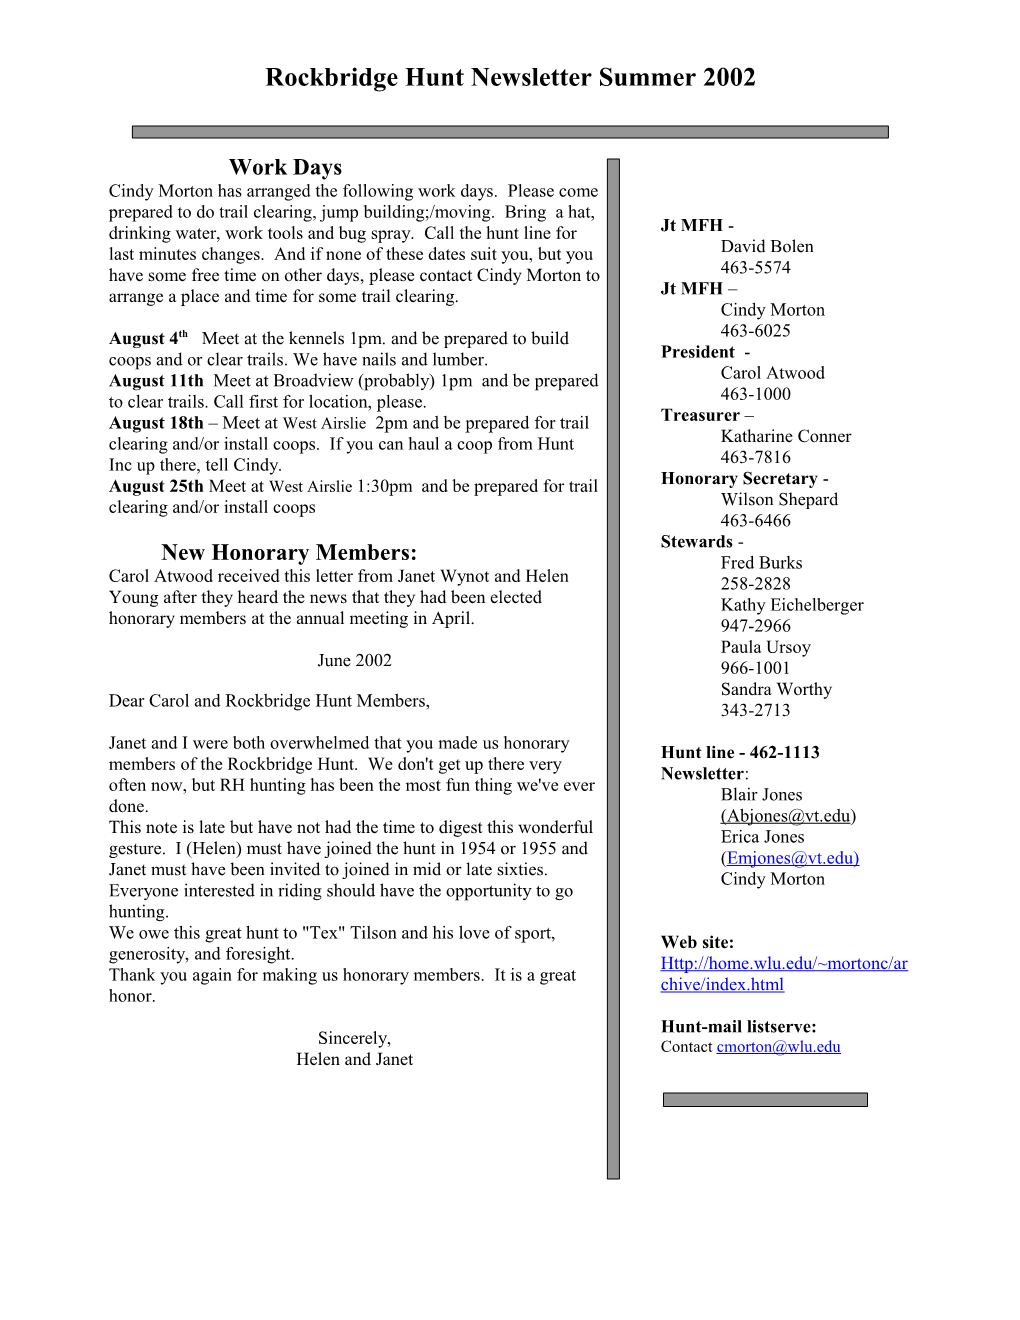 Rockbridge Hunt Newsletter - Summer 2002